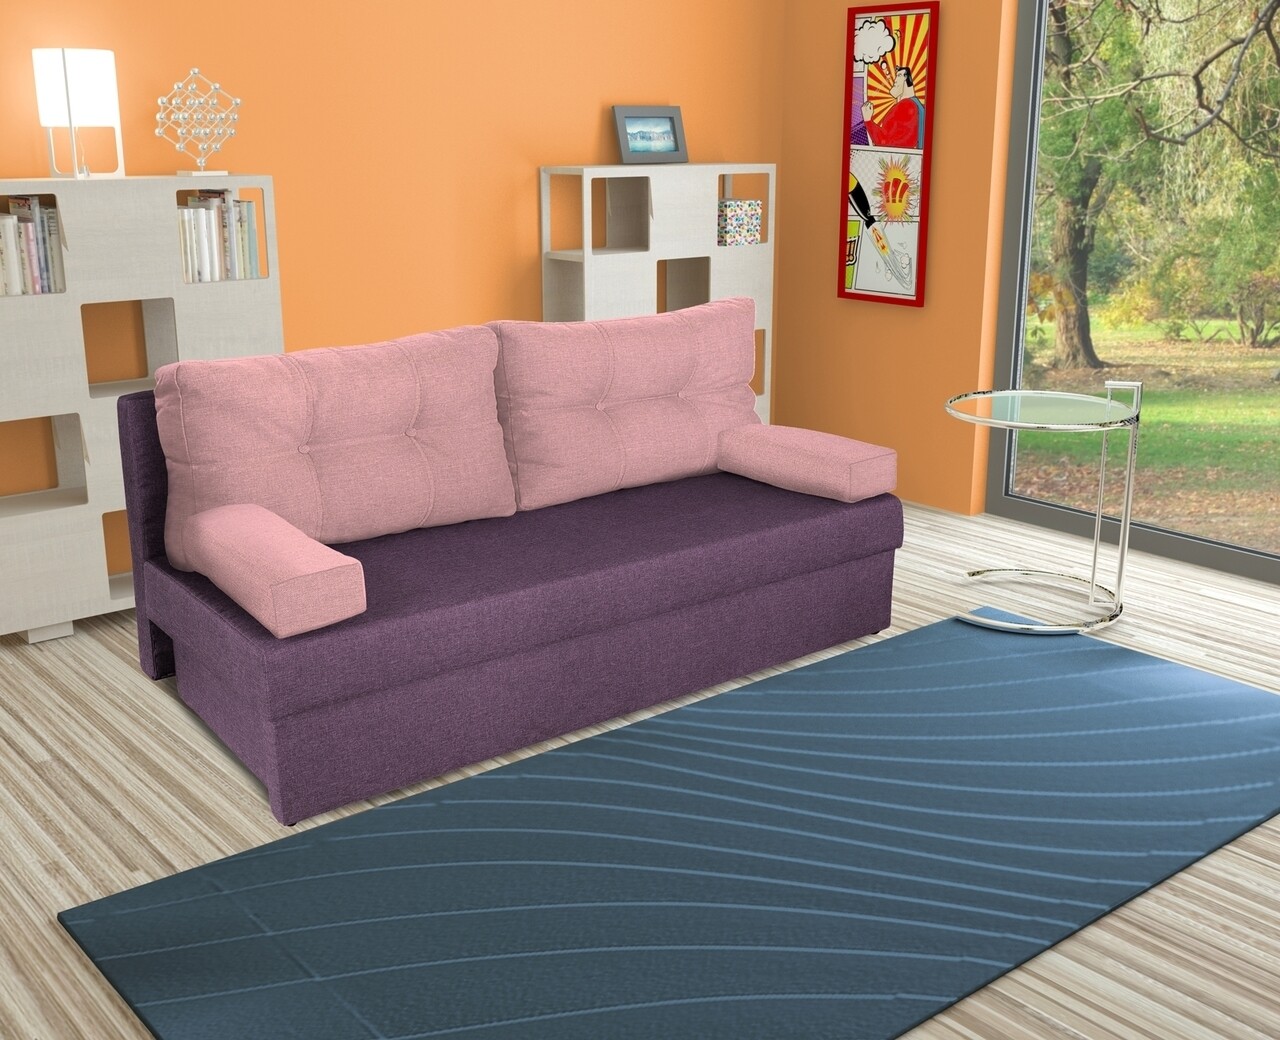 Bedora alfi kihúzható kanapé 192x80x77 cm tárolóládával, purple/pink flamingo